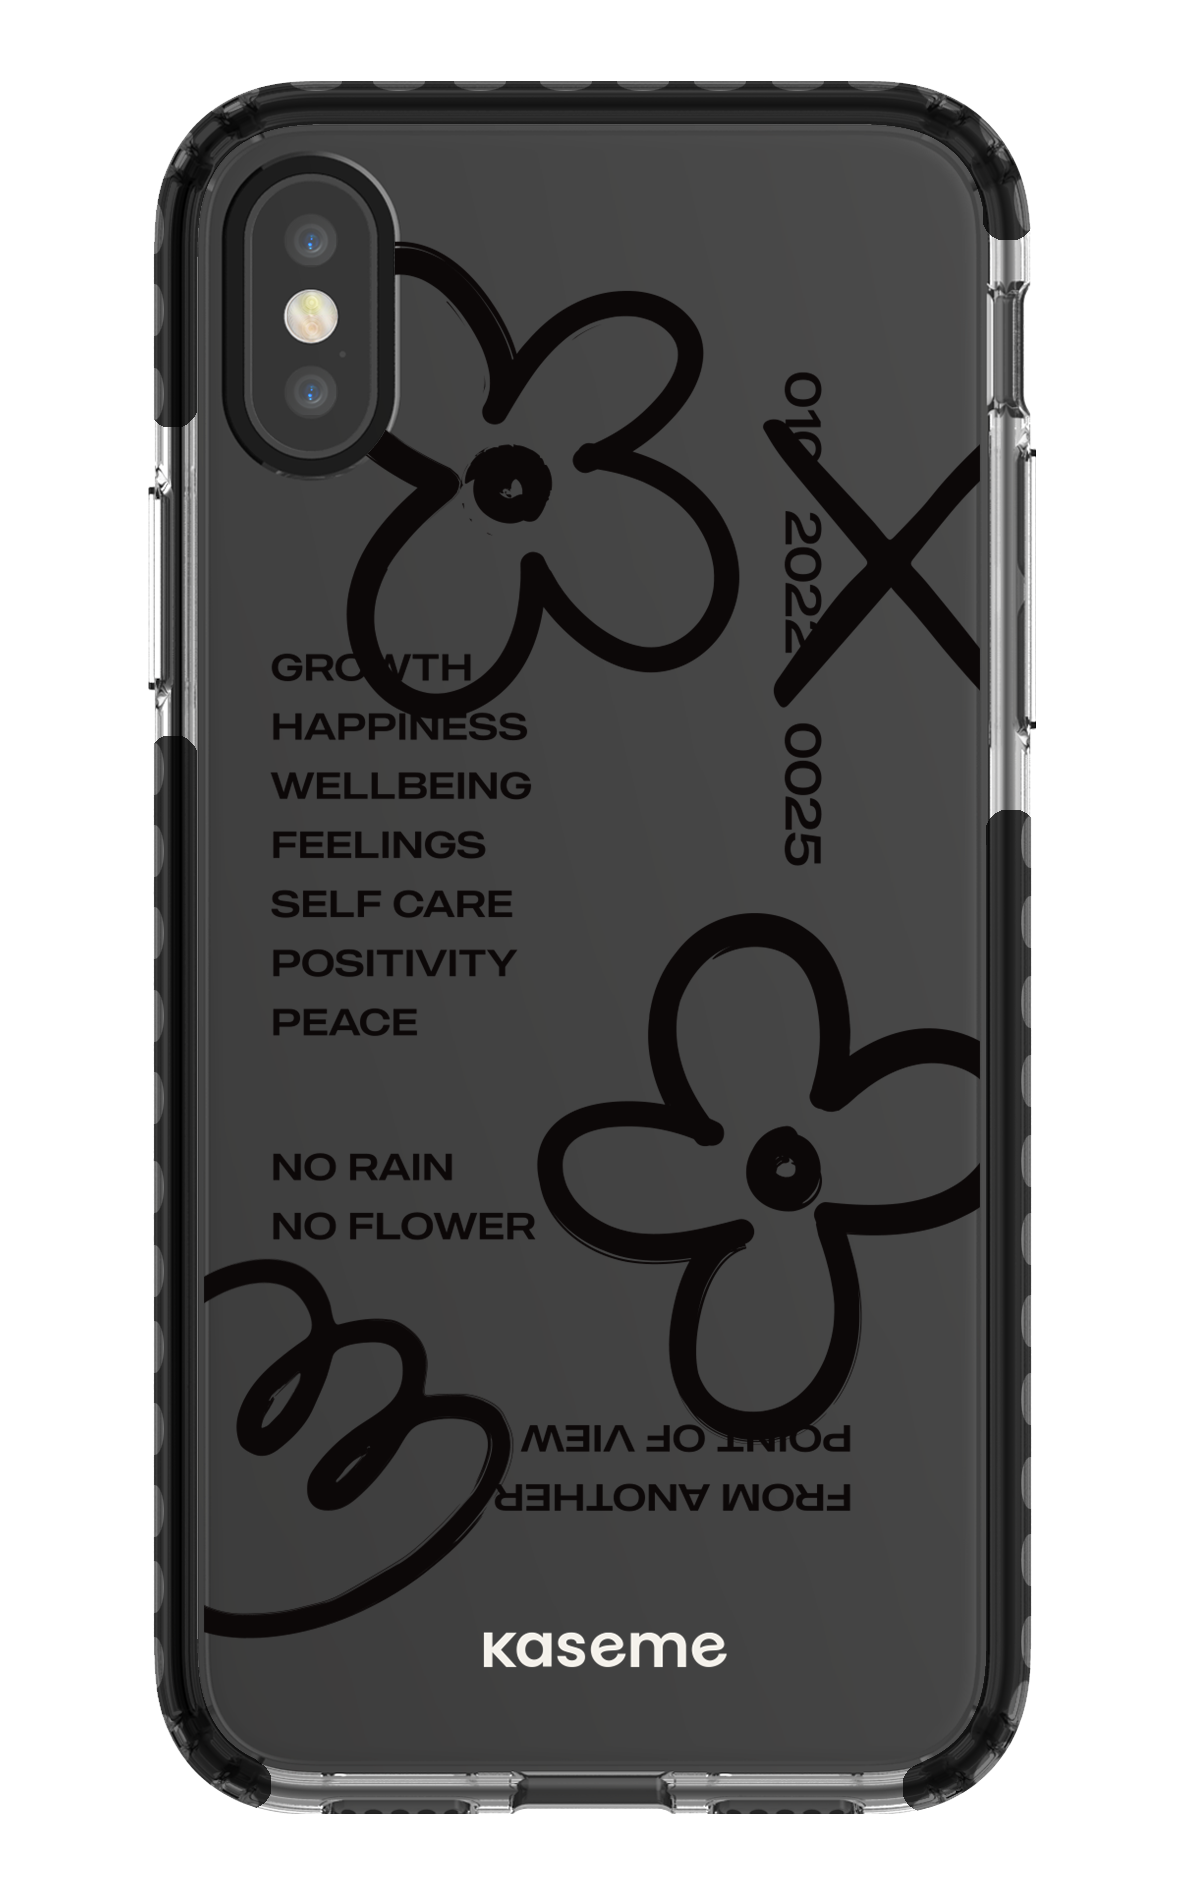 Feelings black clear case - iPhone X/Xs